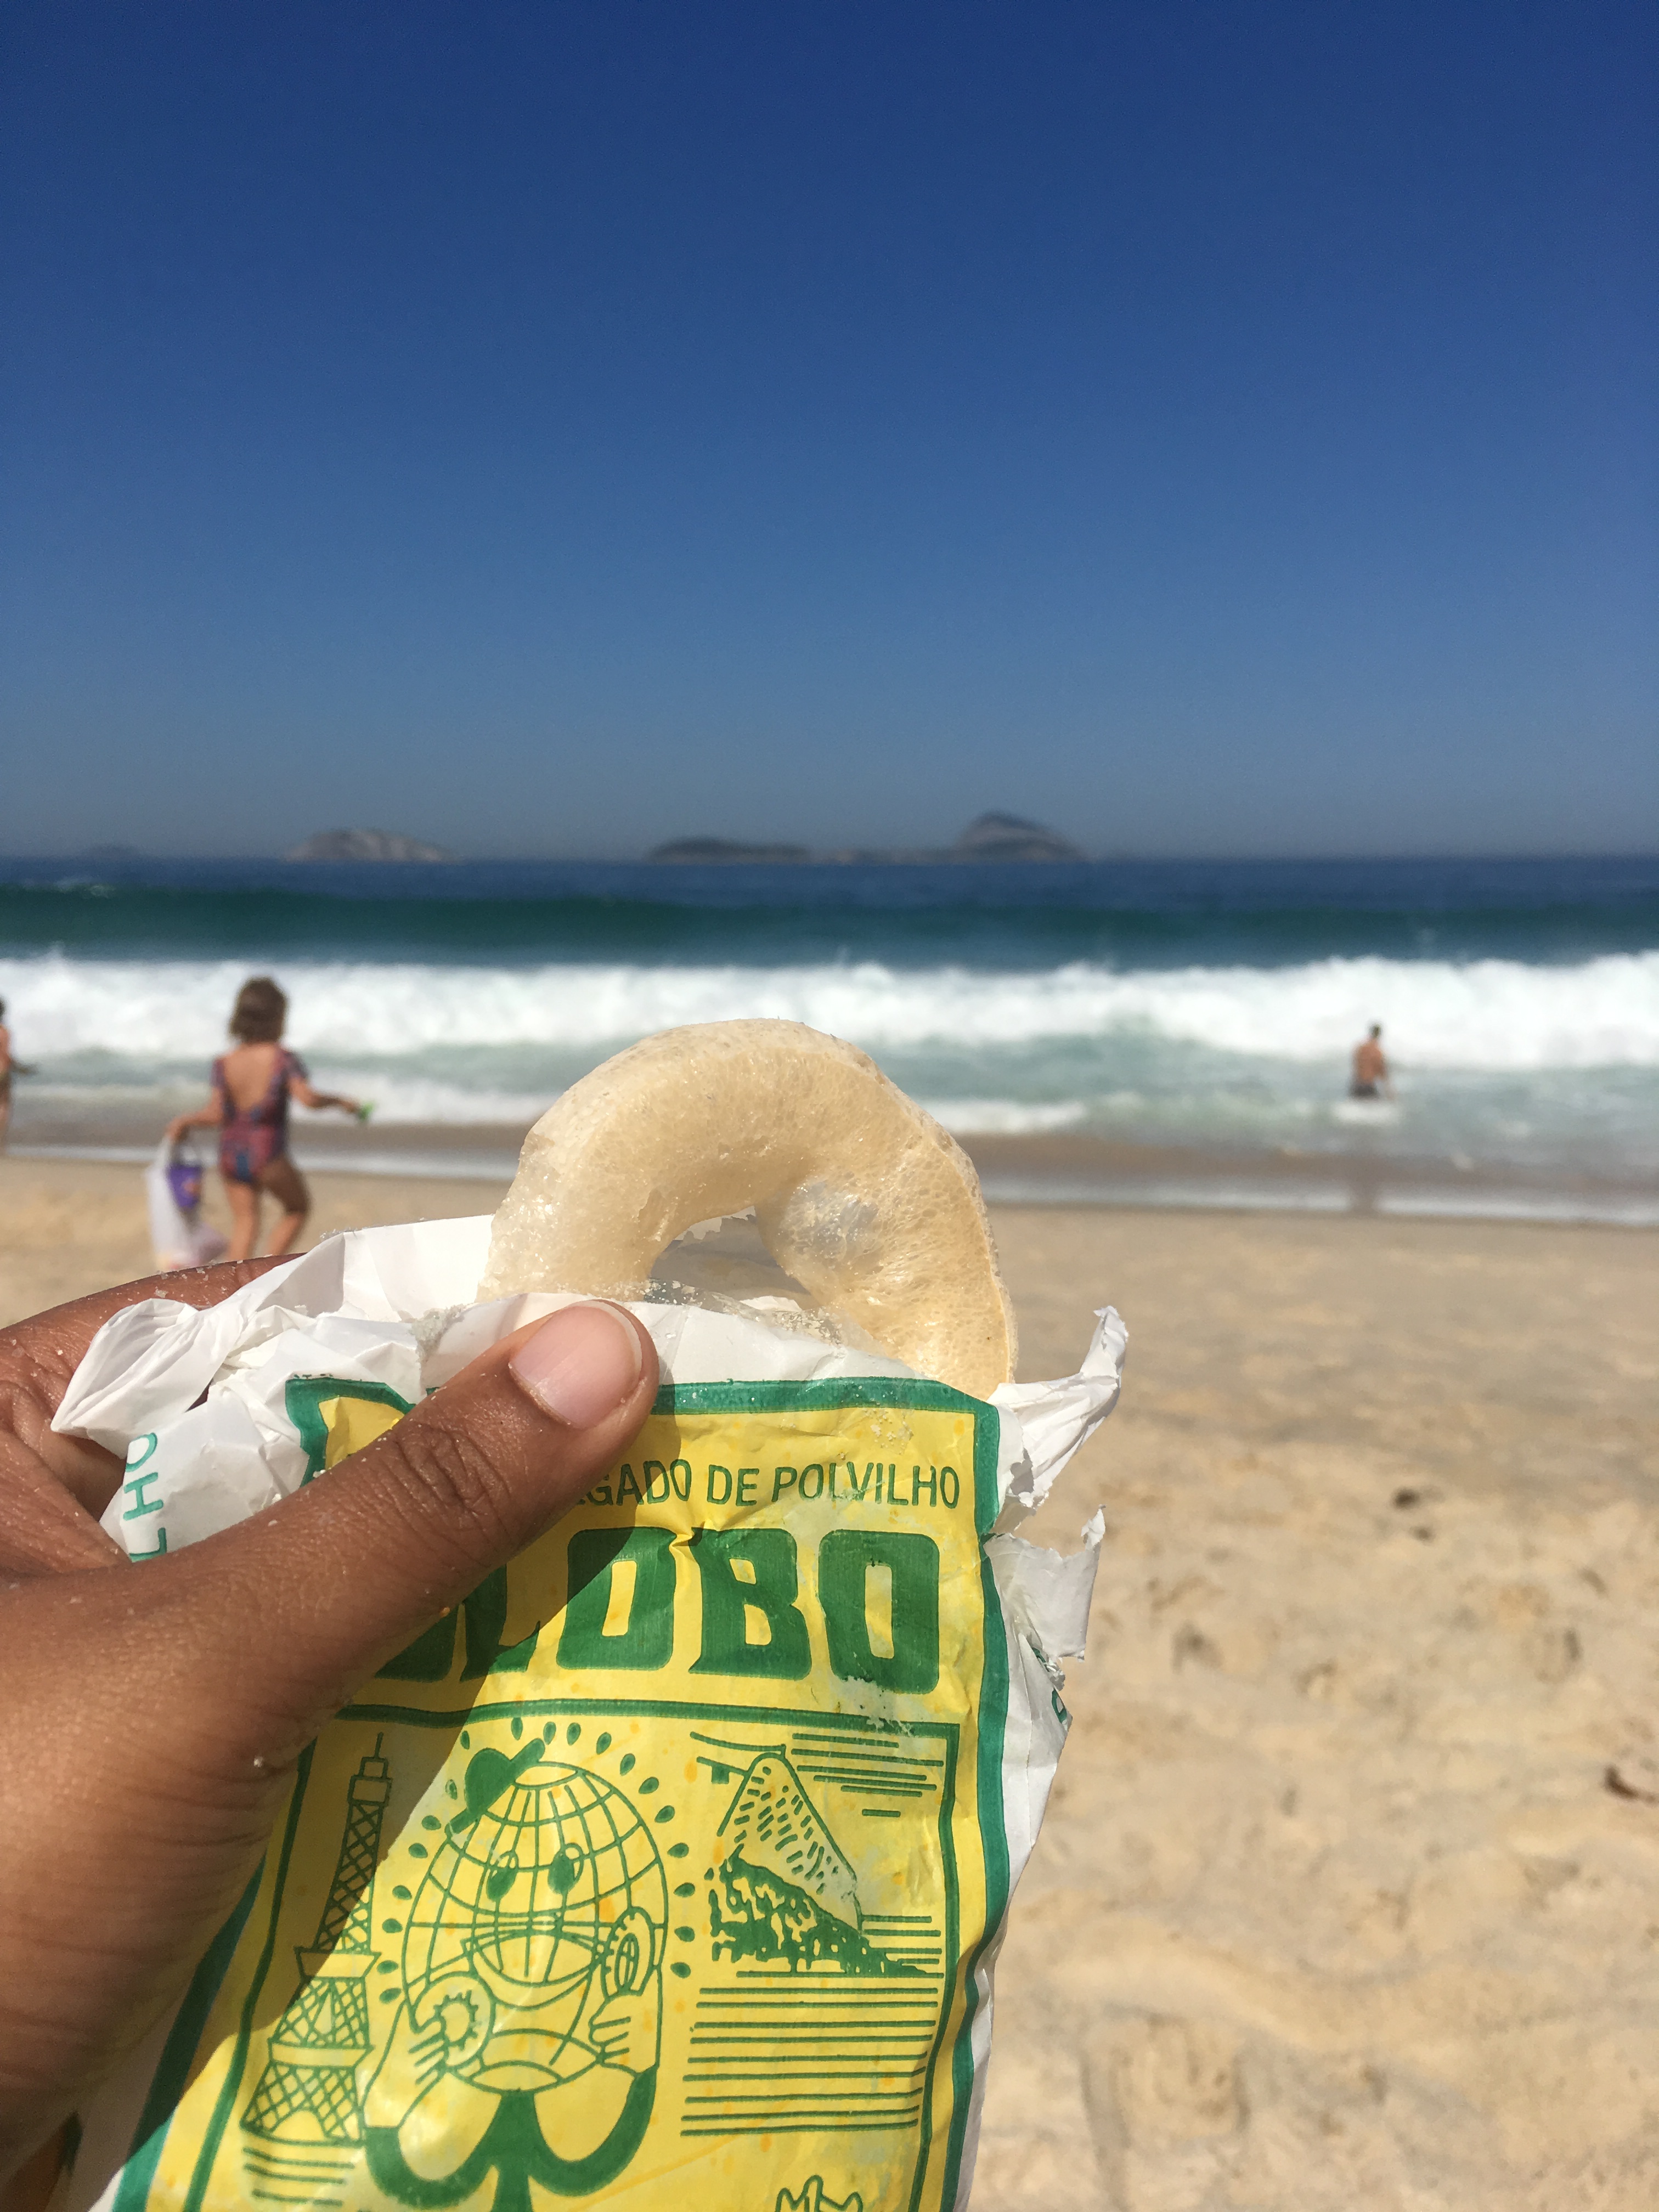 Light and puffy Globo - Rio's quintissential beachside snack, Rio de Janeiro, Brazil